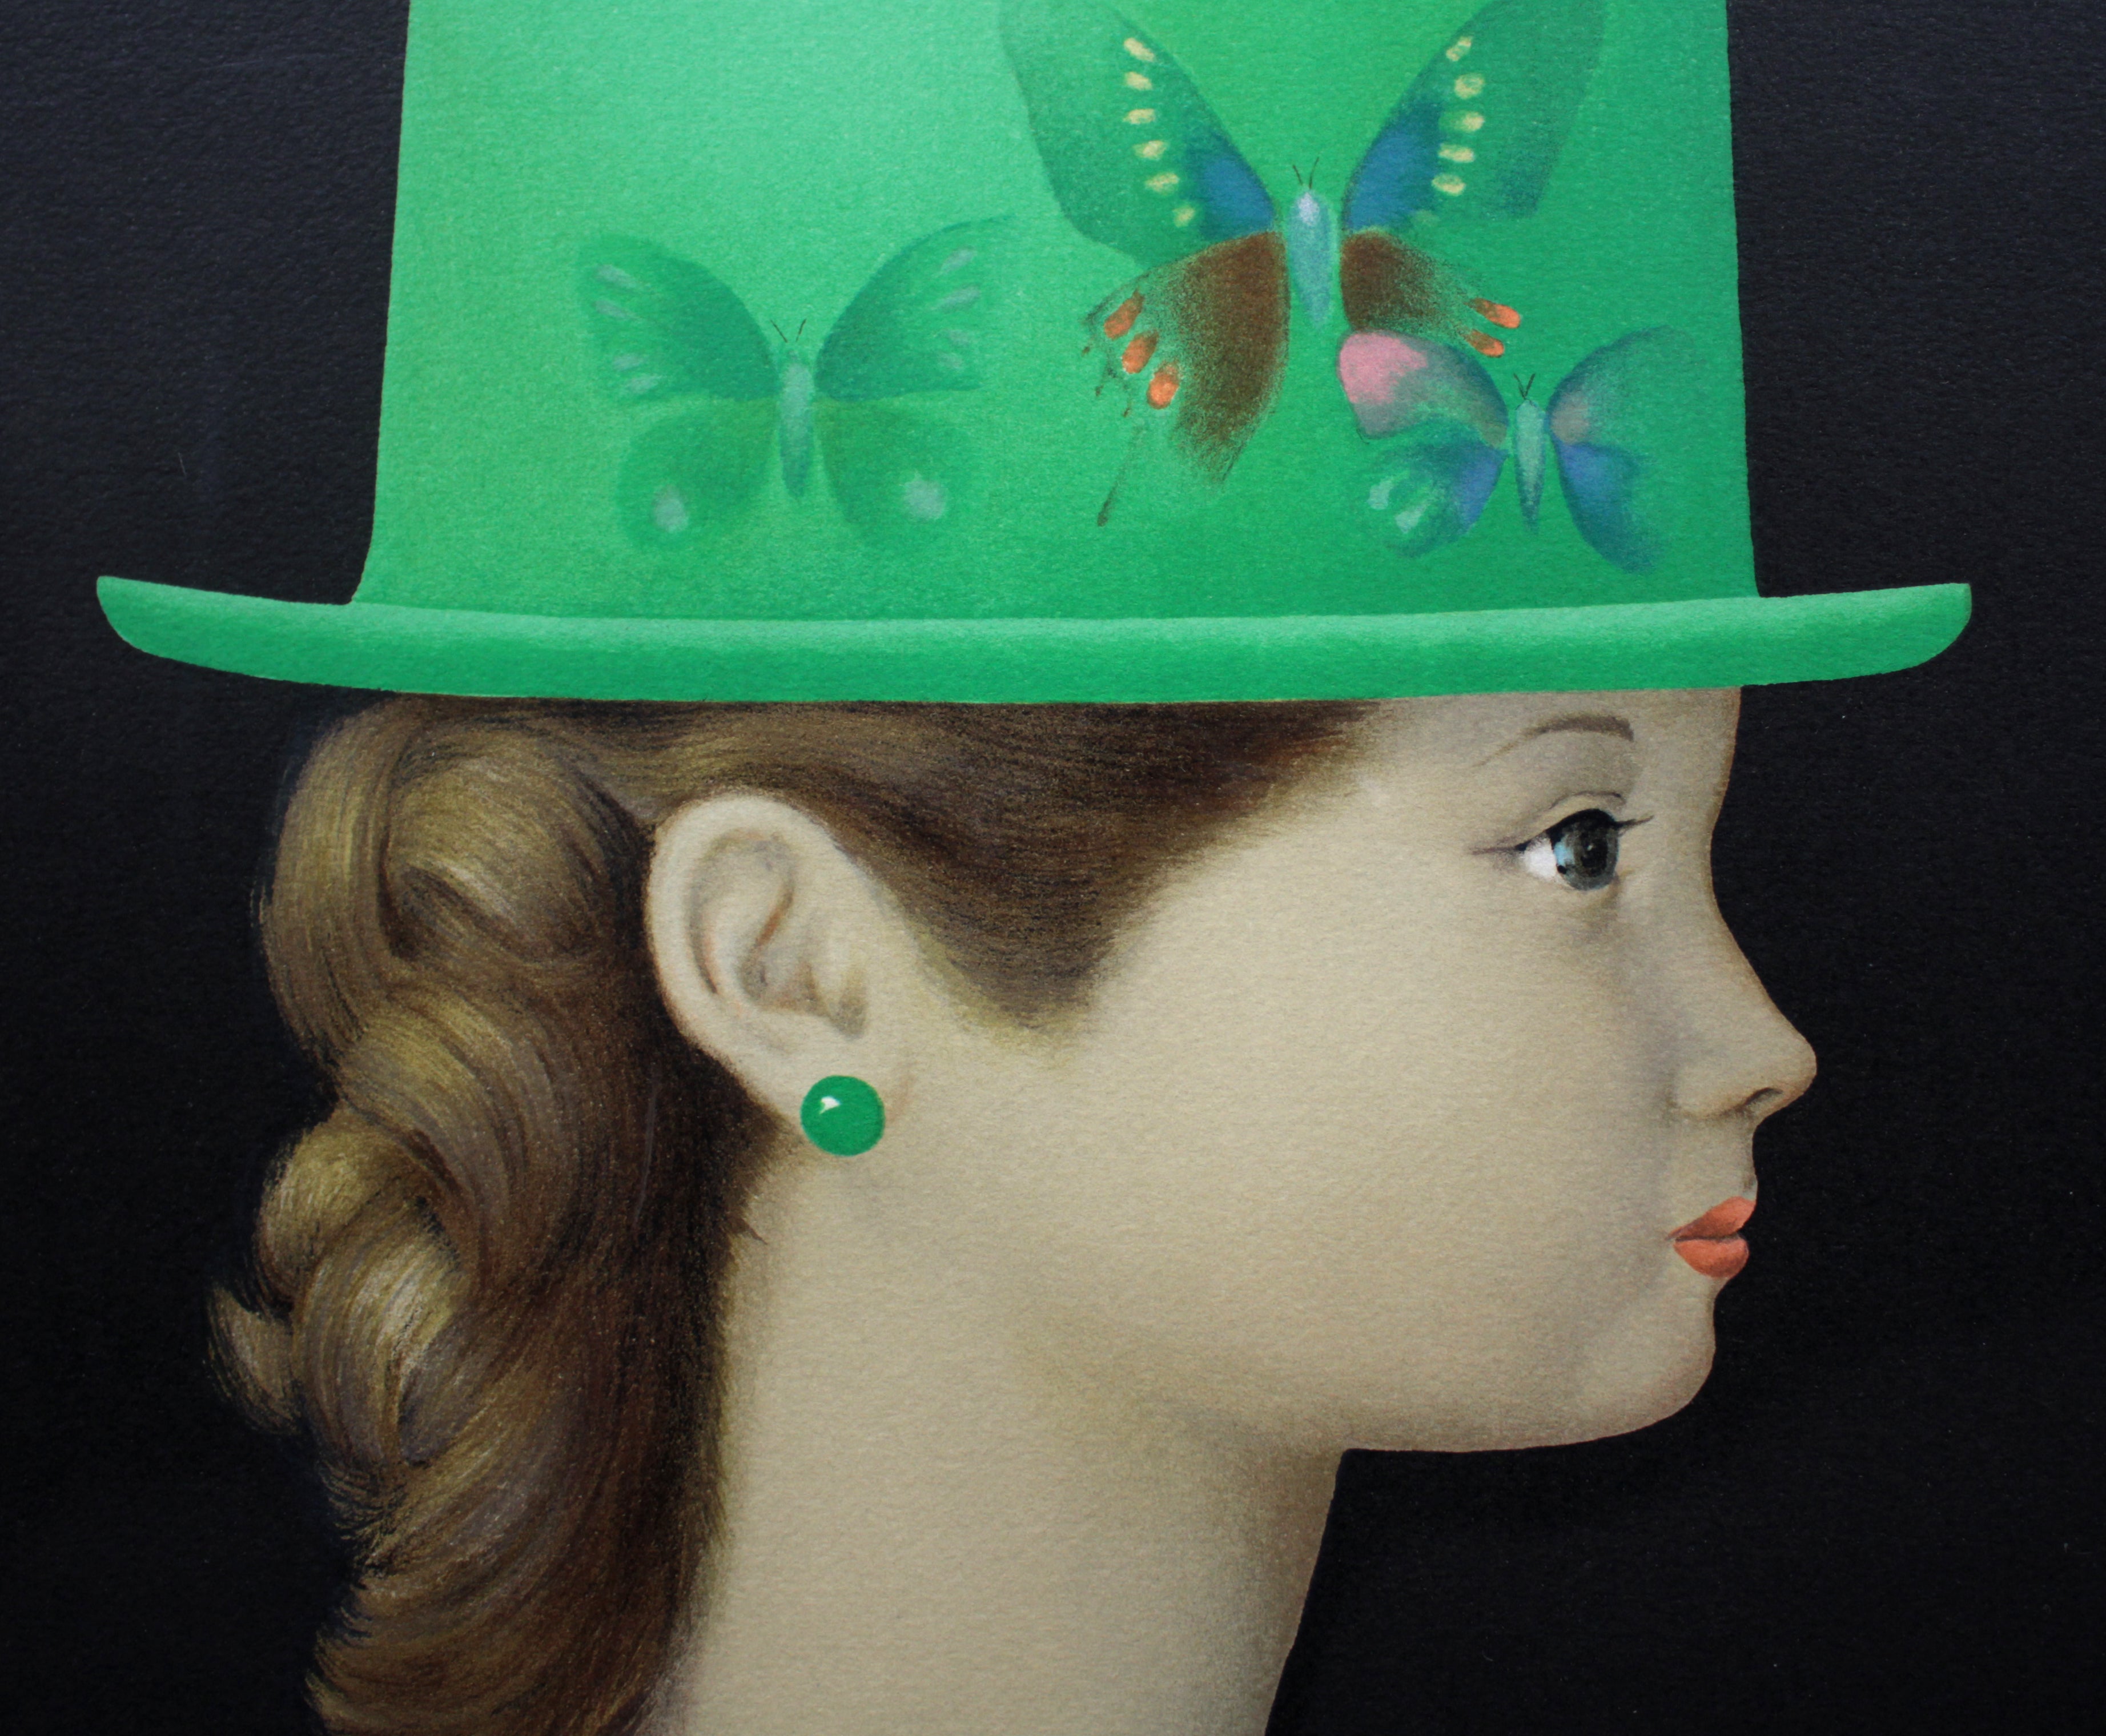 深沢邦朗『緑の帽子の少女』リトグラフ【真作保証】 絵画3969クサカベ賞